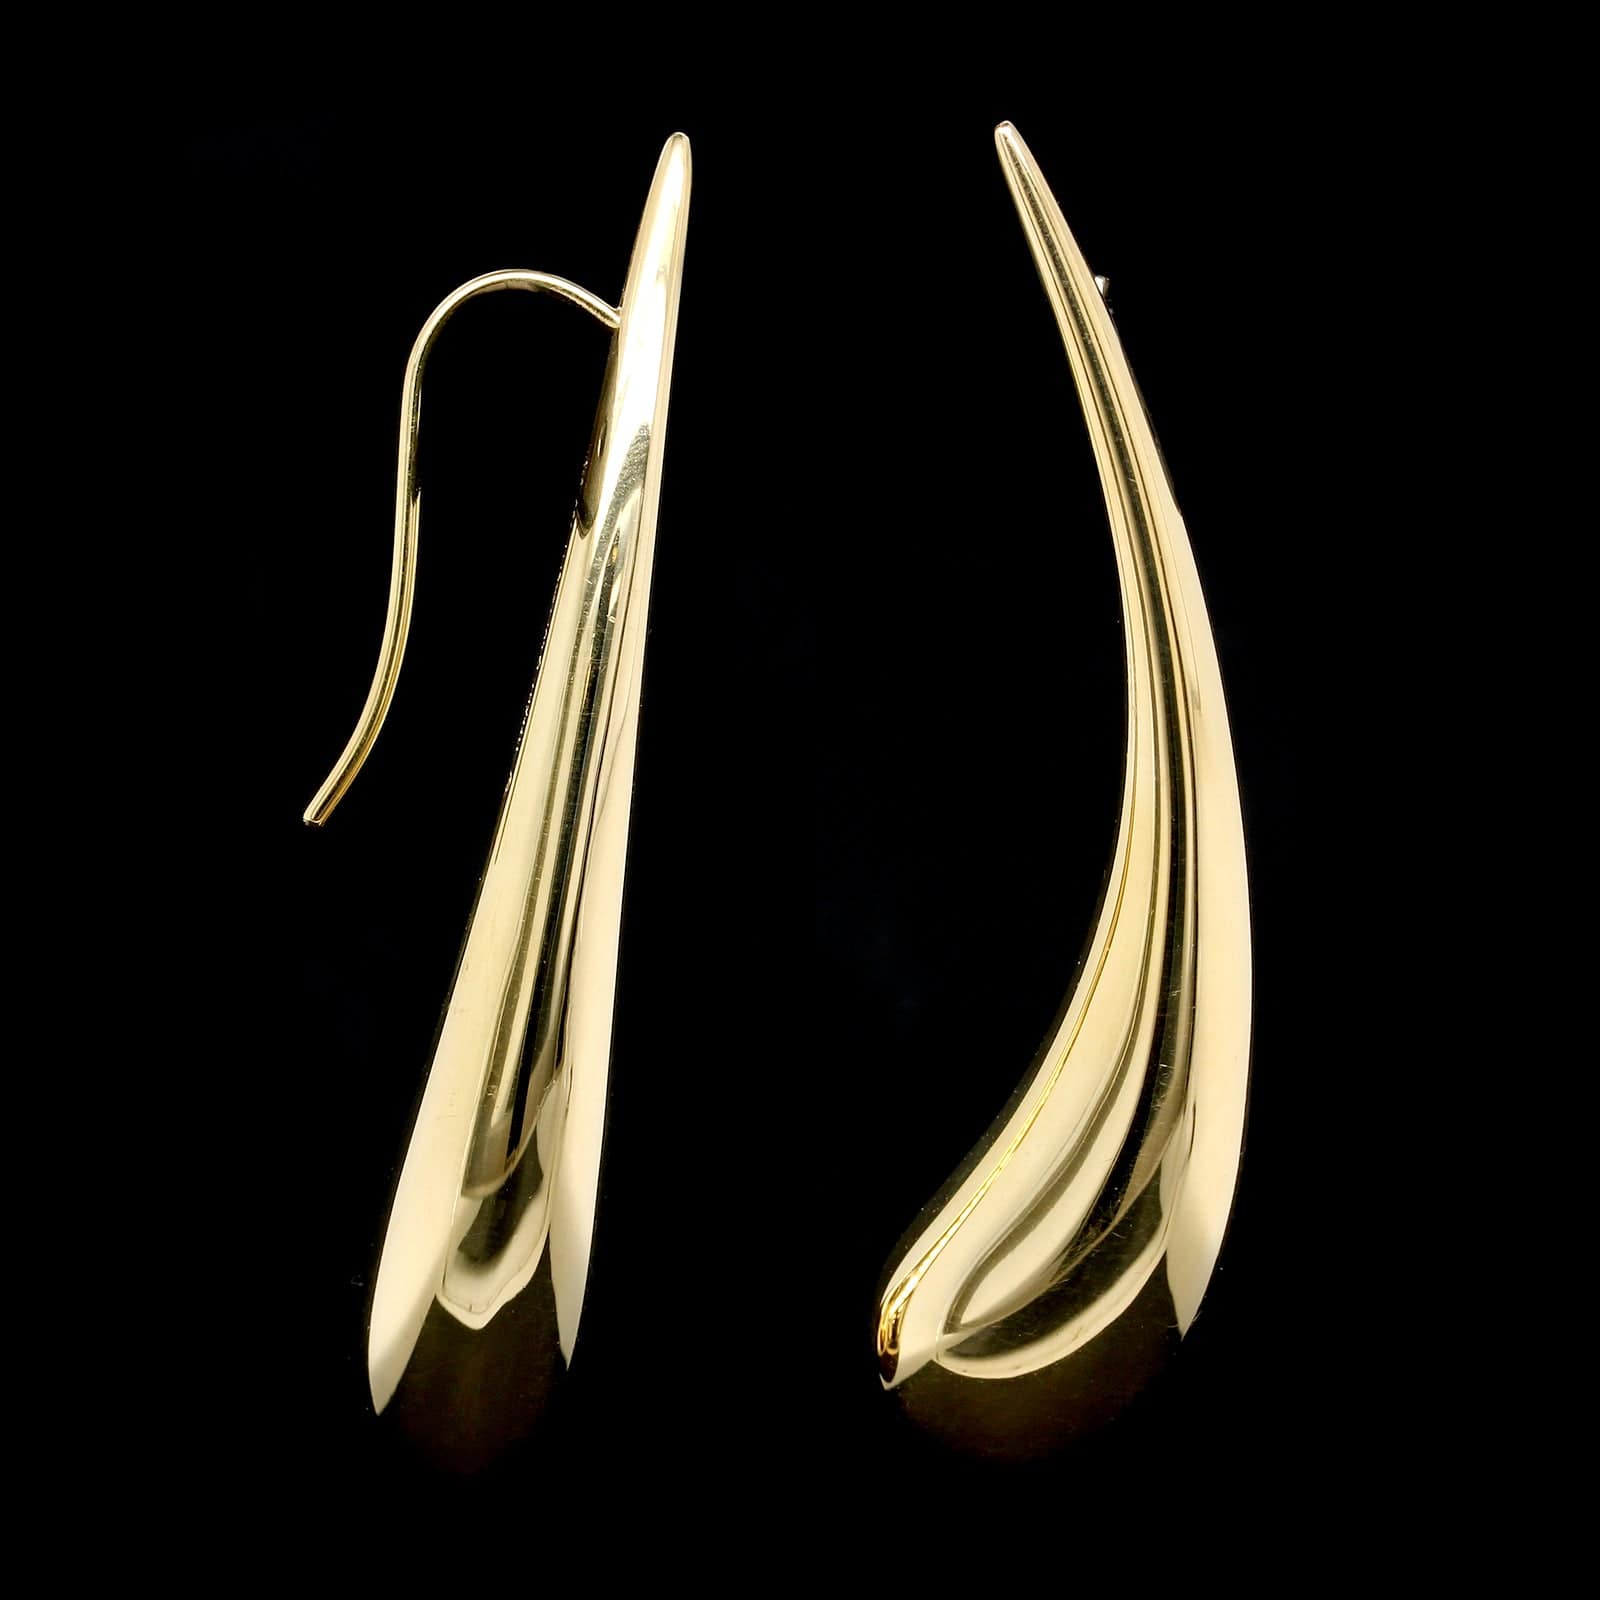 Elsa Peretti® Open Heart Hoop Earrings